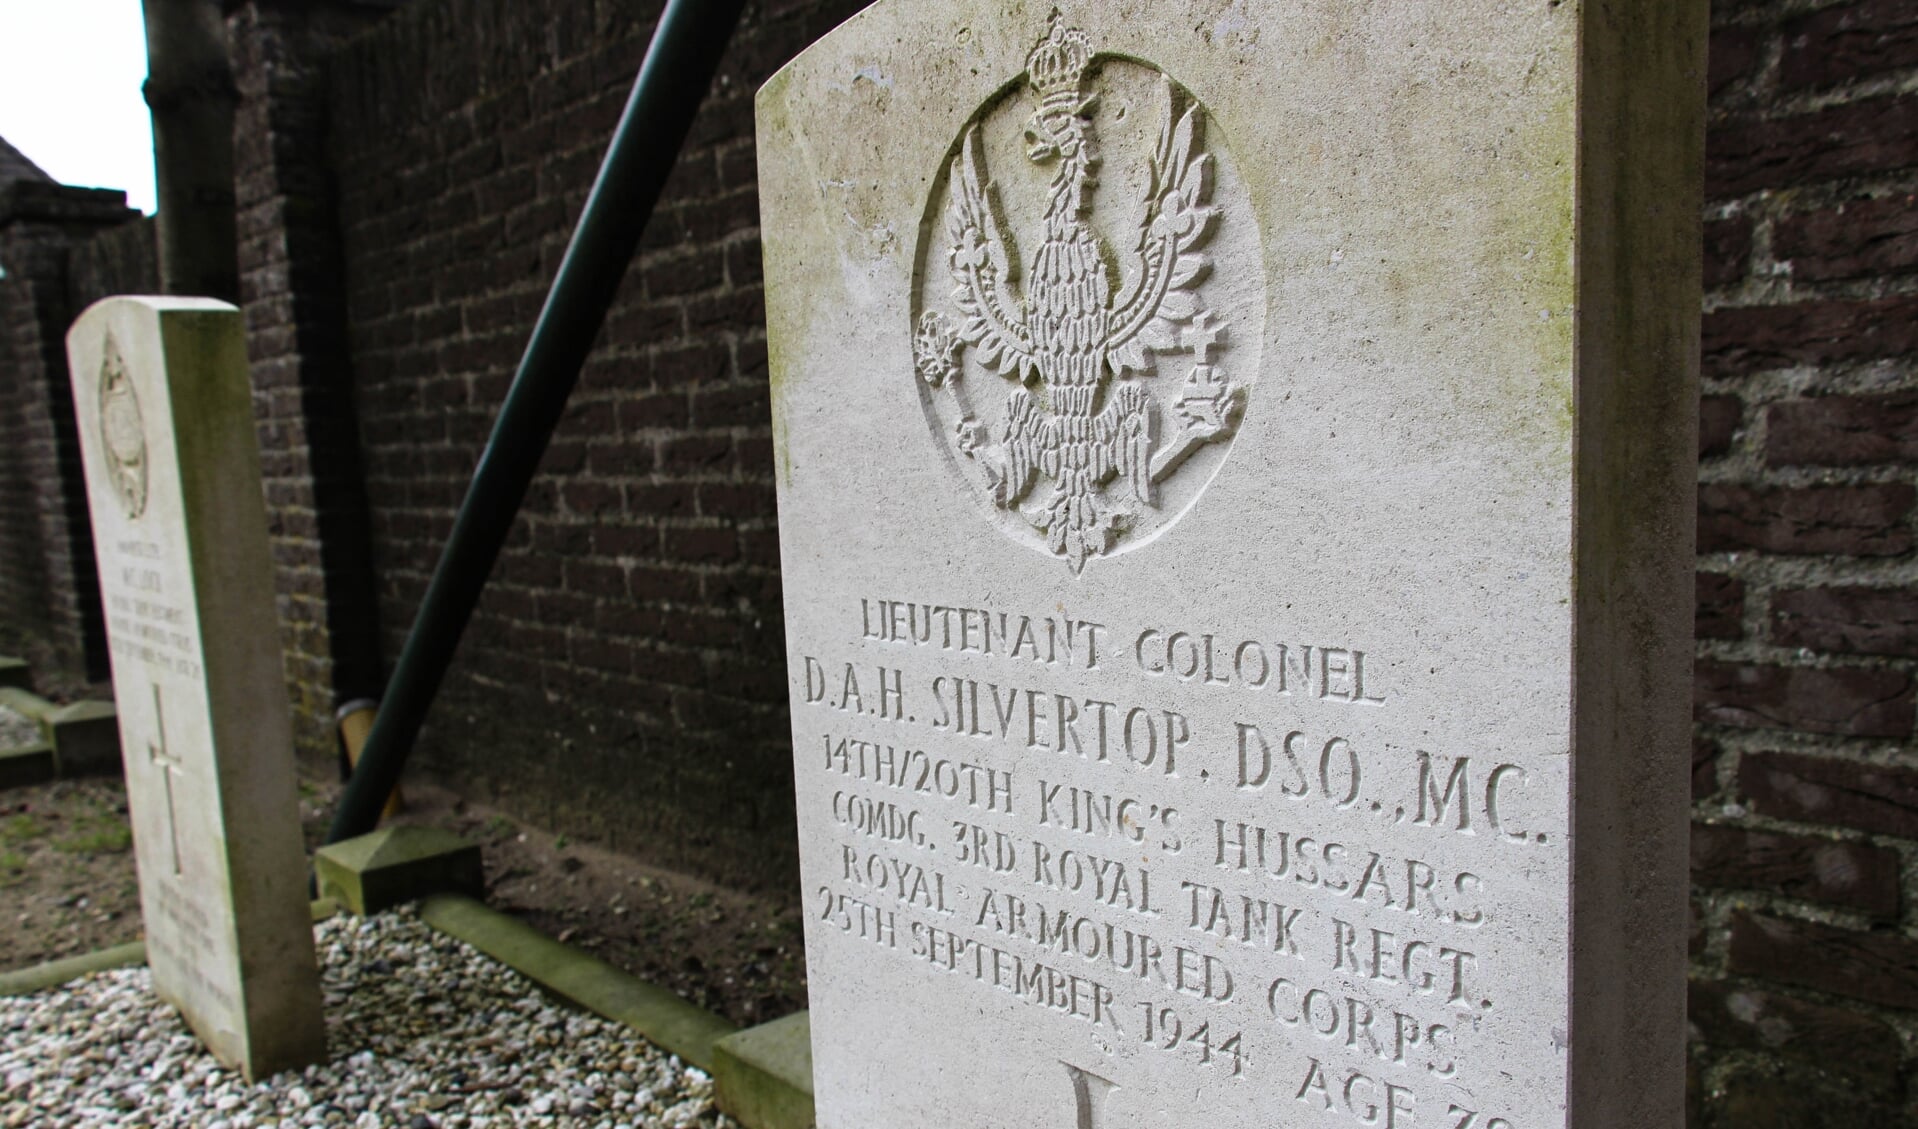 Het tragische verhaal van de Brit David Silvertop, begraven in Sint Anthonis, komt aan bod in de tentoonstelling 'Facing Freedom'.